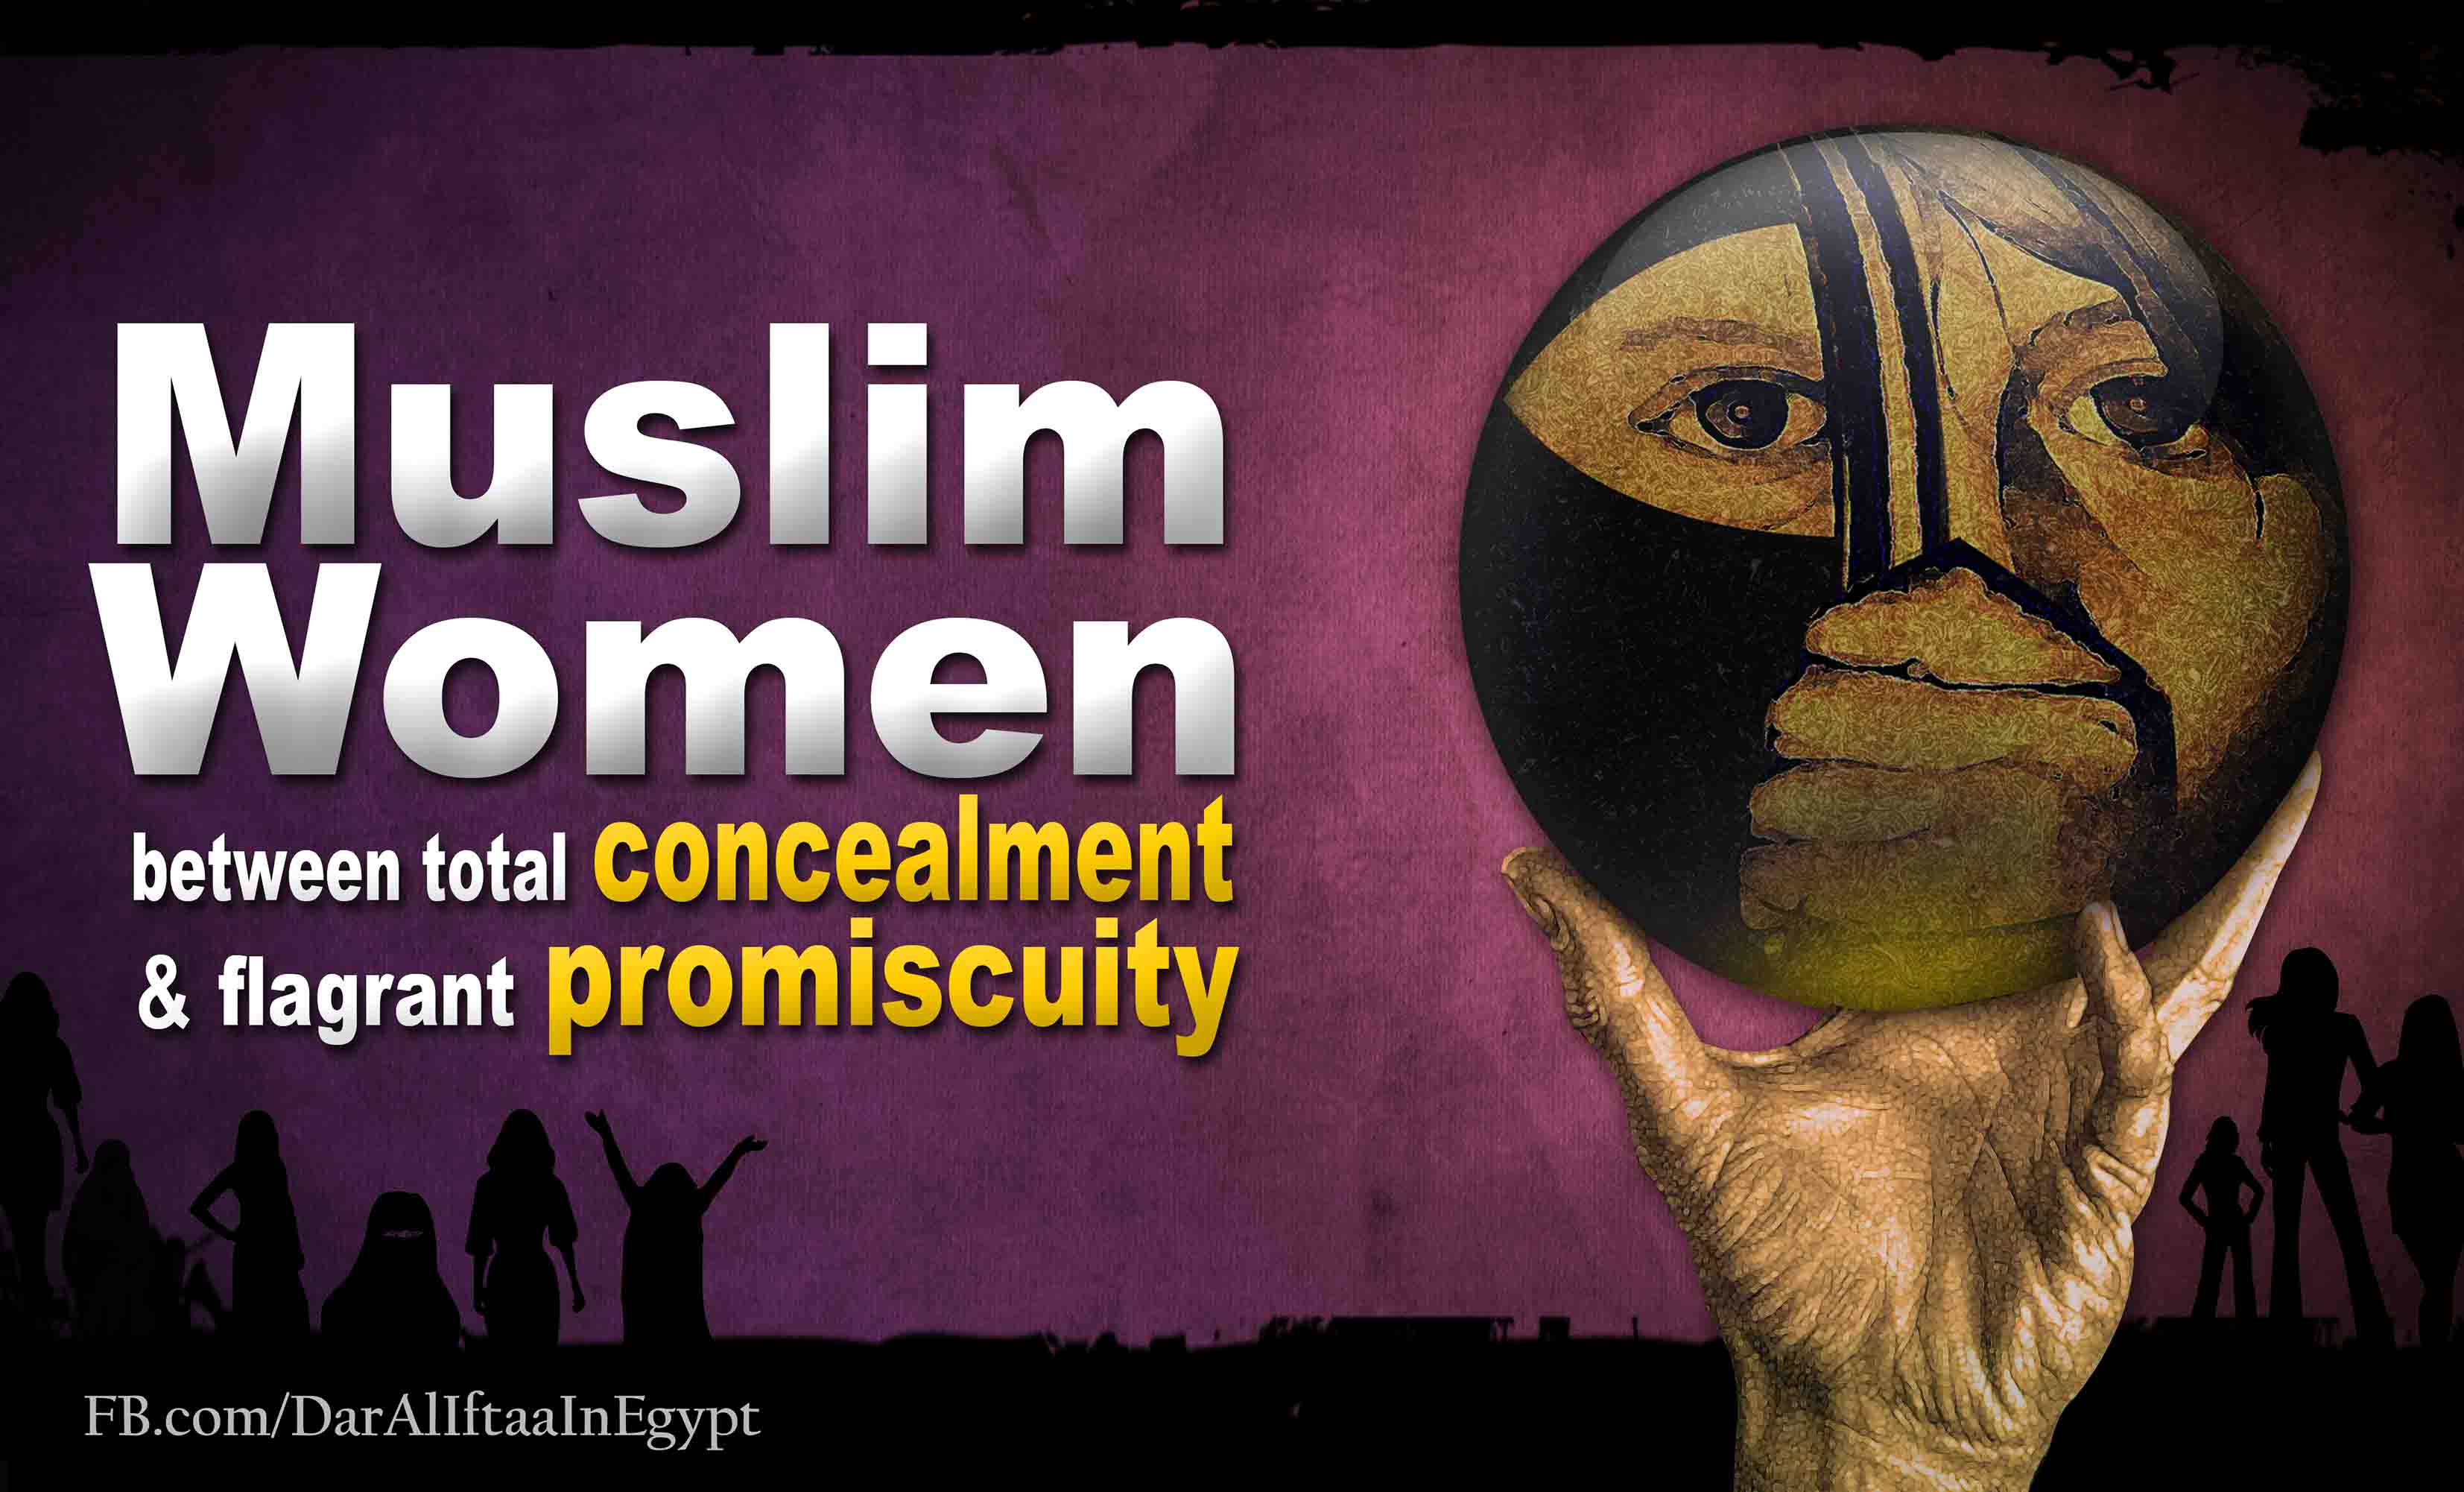 Muslim women between total concealment & flagrant promiscuity